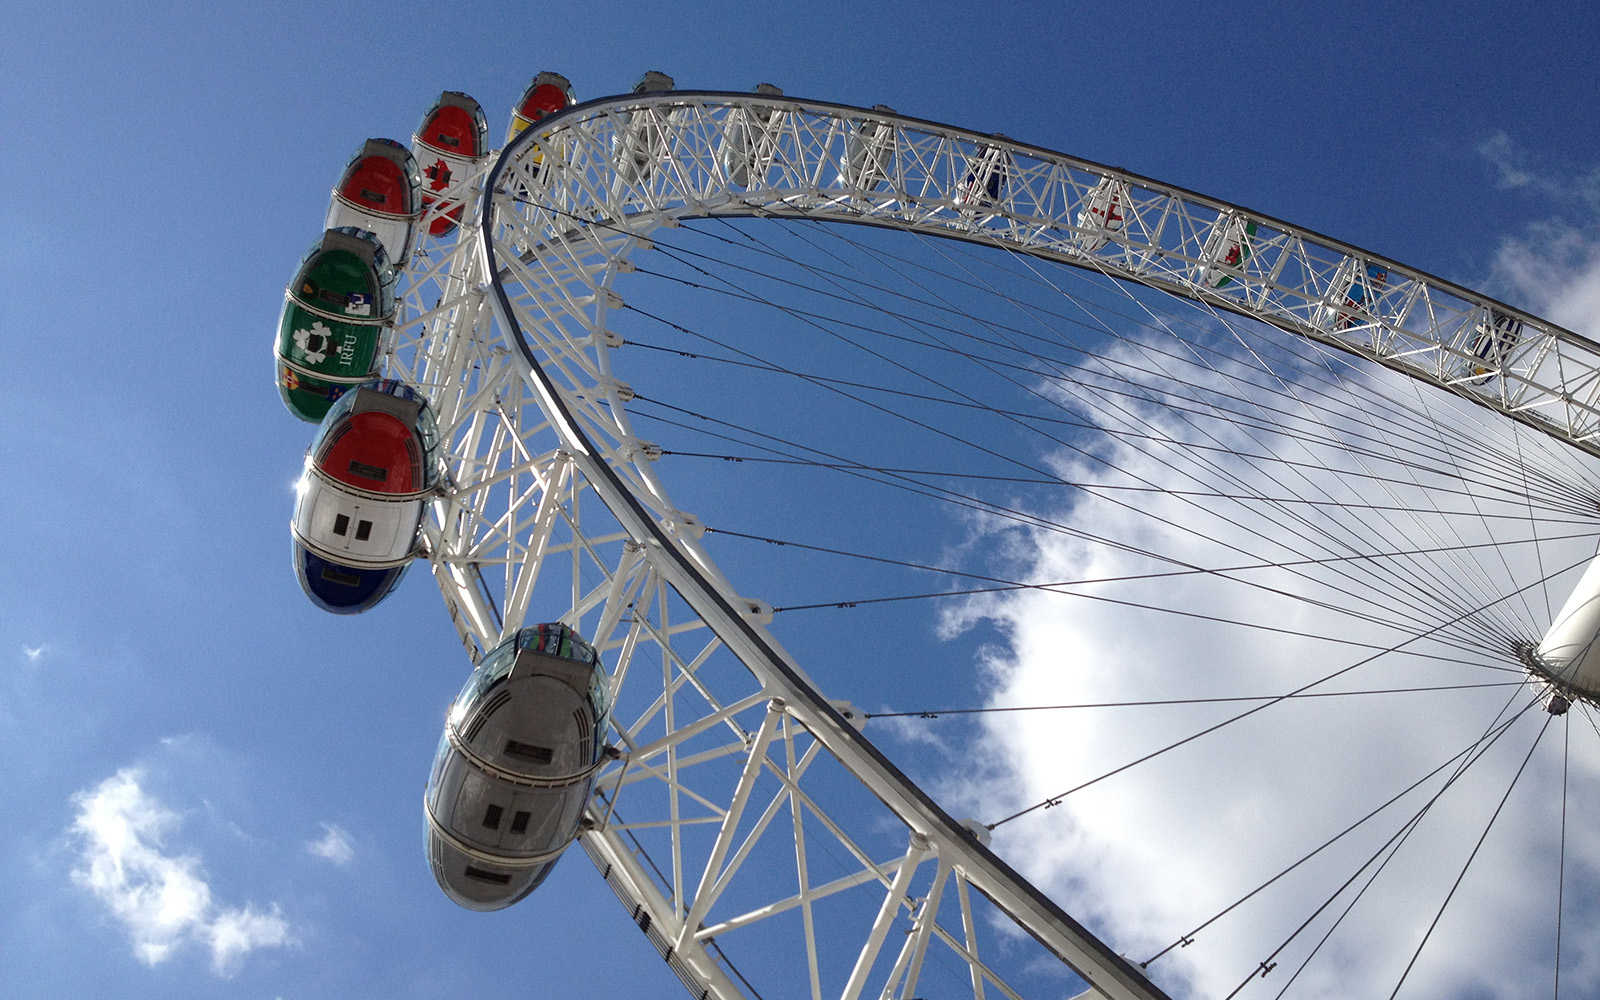 London Eye, 5 September 2015